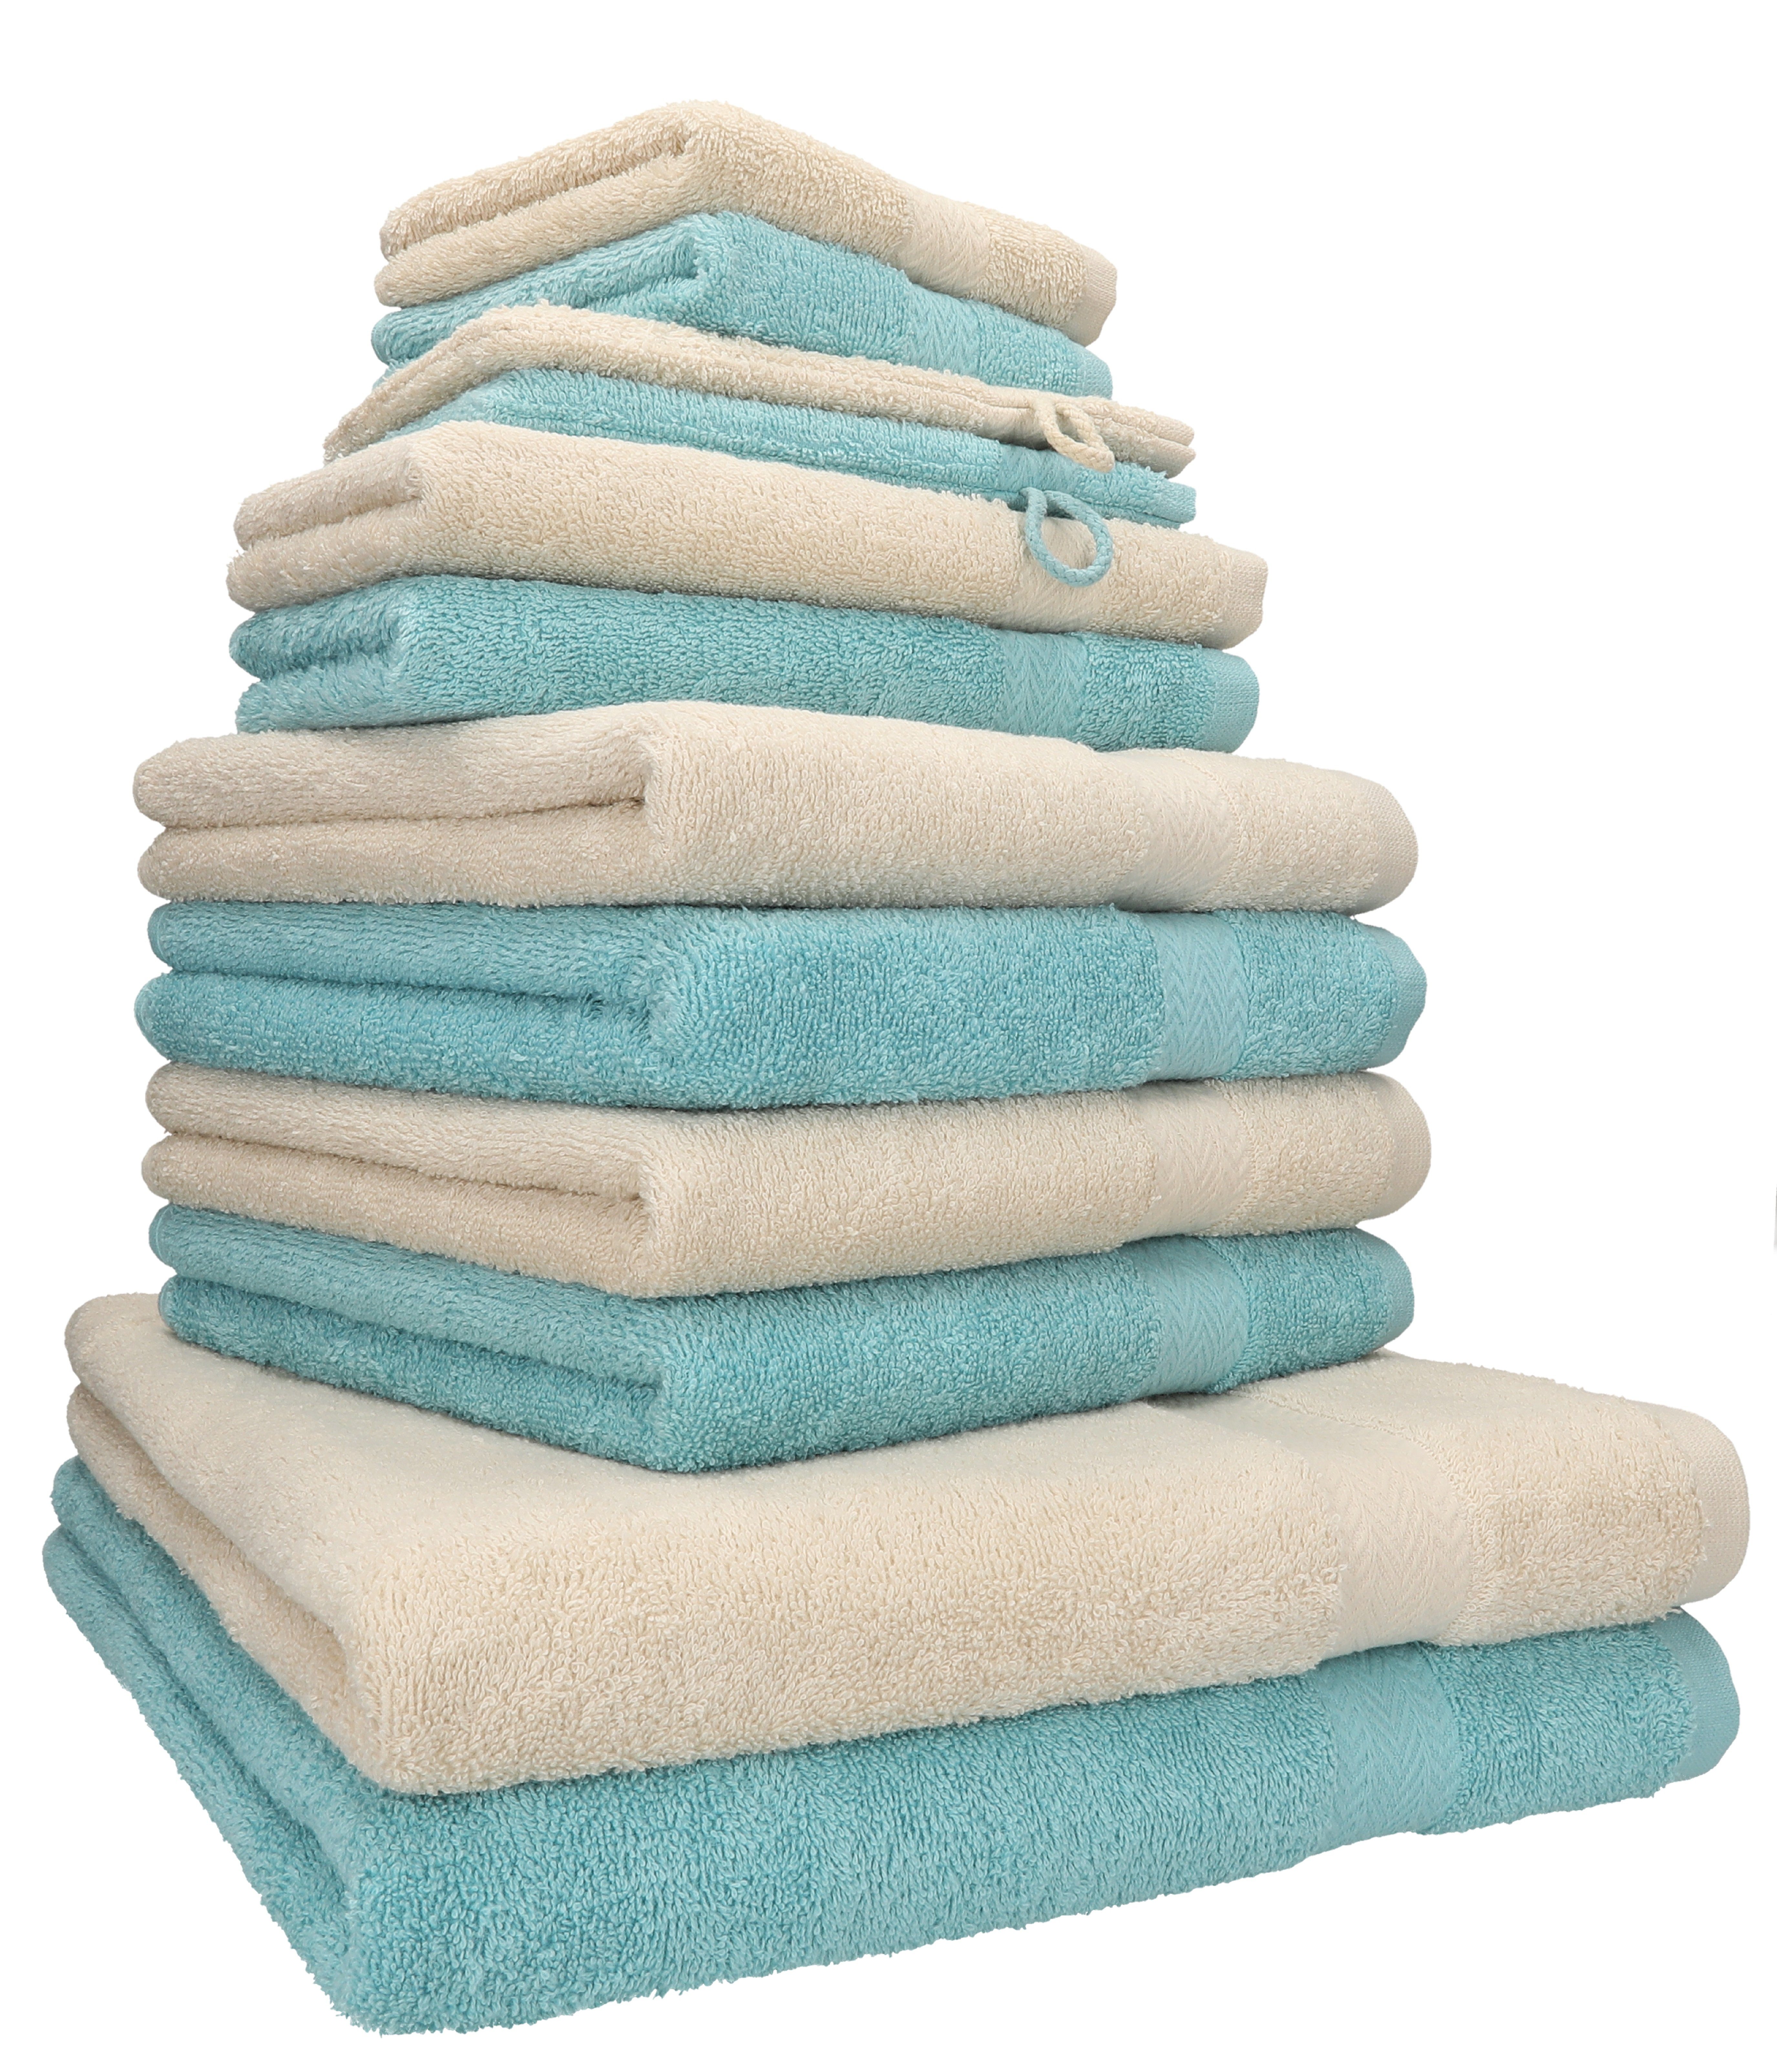 Betz Handtuch Set 12-TLG. Handtuch Set Premium Farbe Sand/Ocean, 100% Baumwolle, (12-tlg)